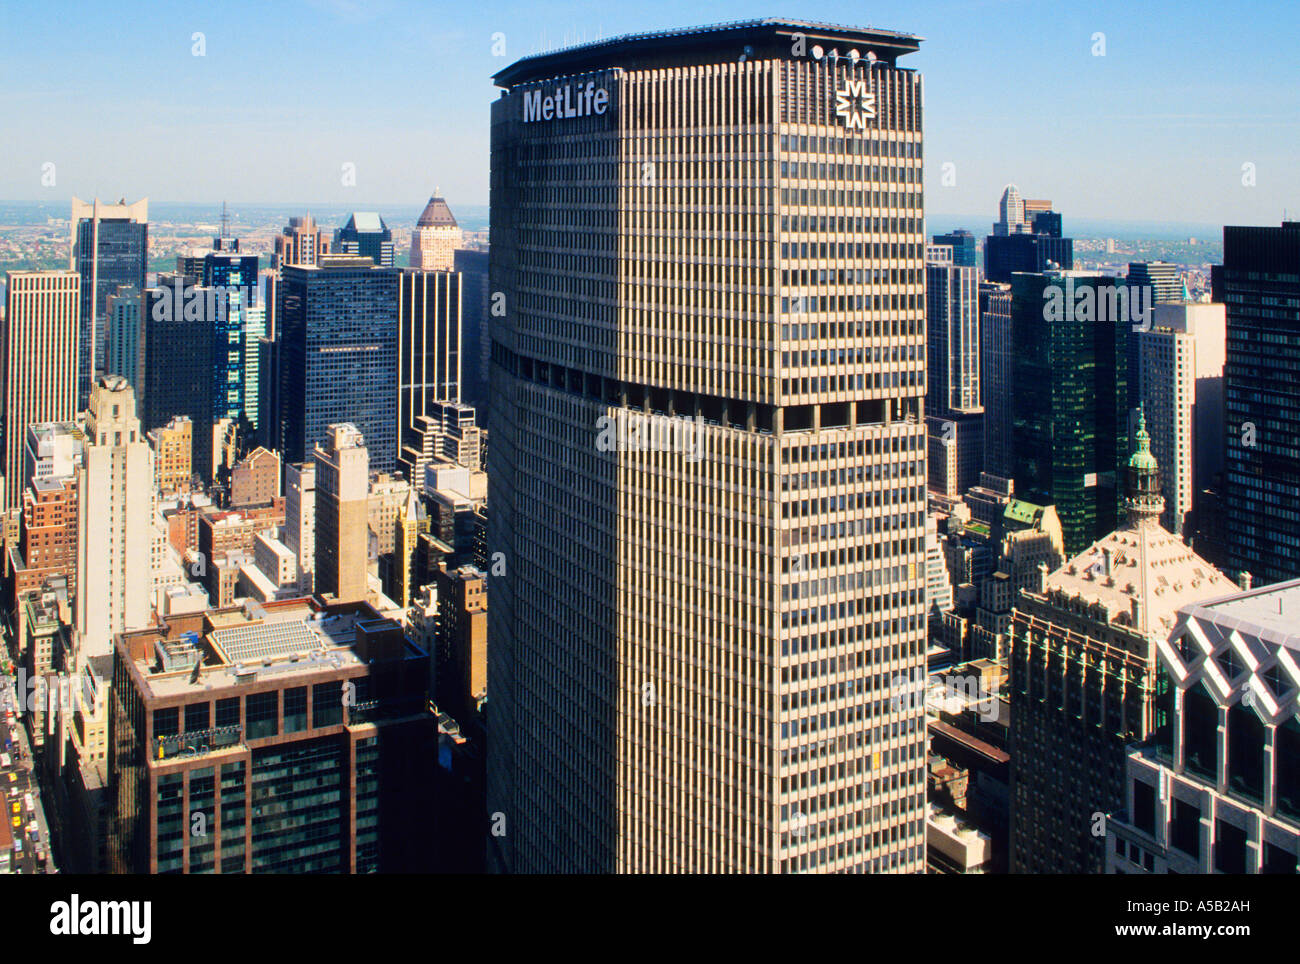 Le MetLife Building en gros plan, un gratte-ciel du milieu du siècle à New York, Midtown Manhattan, Park Avenue. Vue en hauteur des gratte-ciels de New York. Banque D'Images